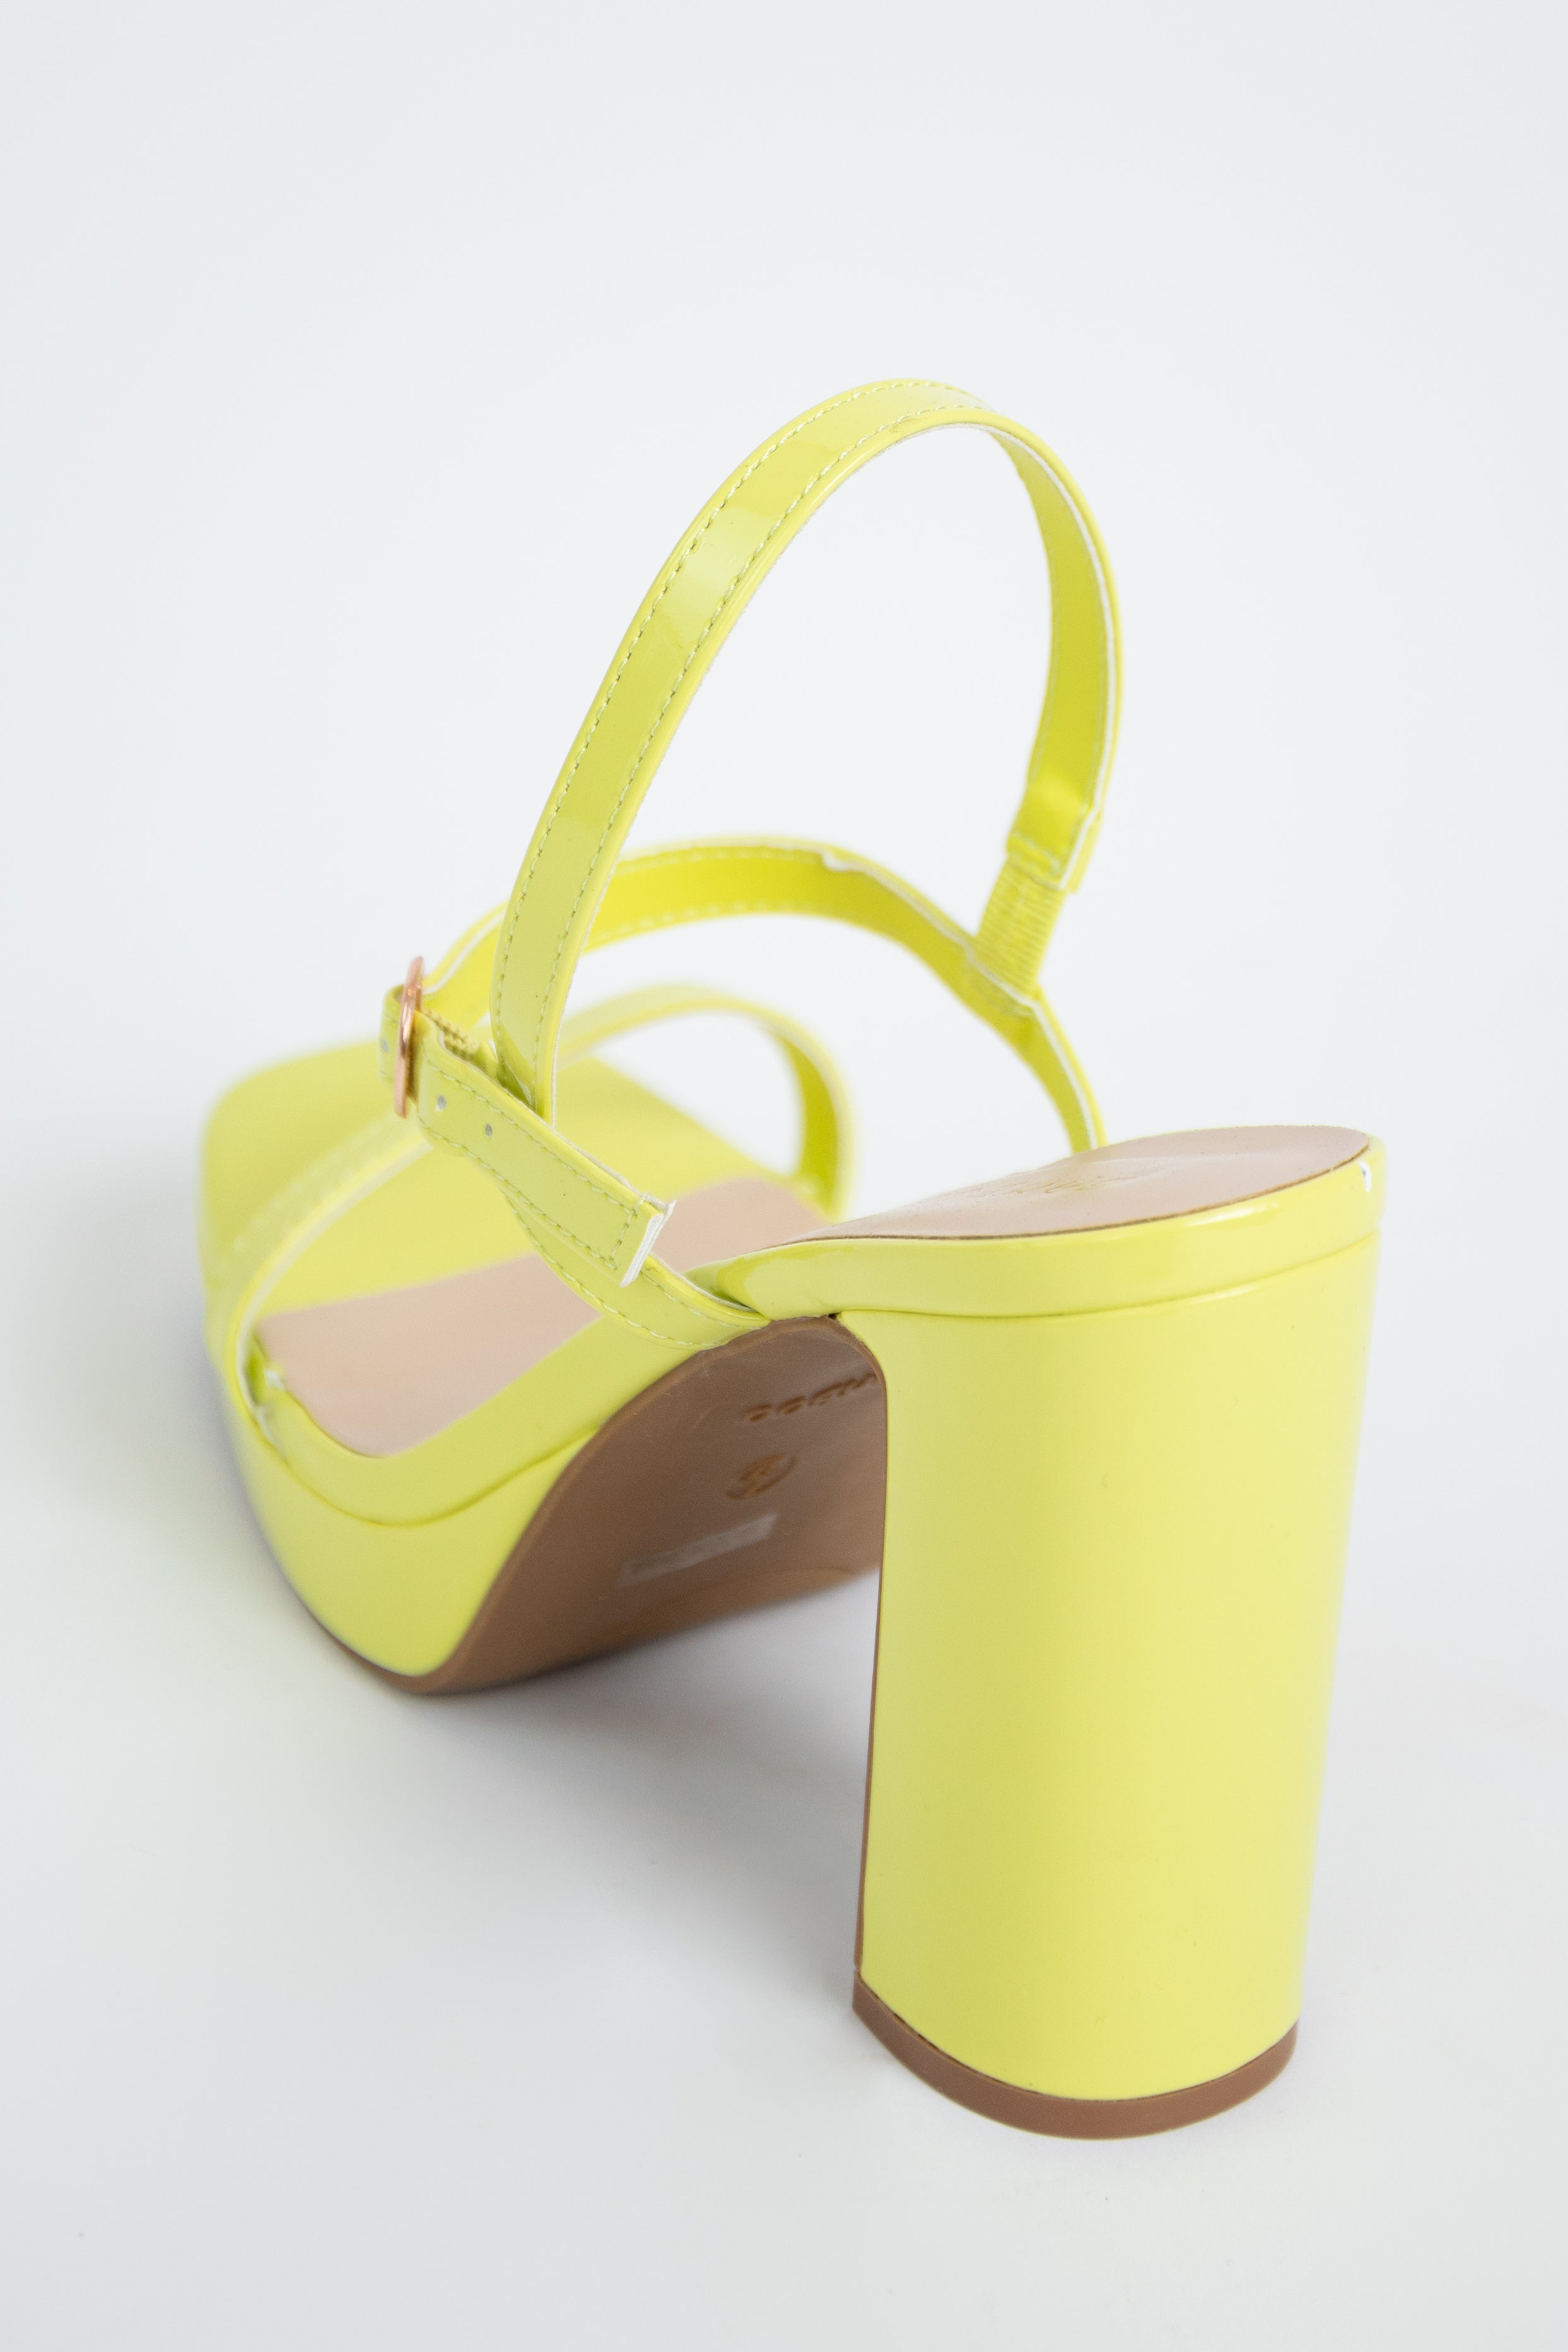 Color Block Heel Sandals | Neon Heel Women Sandals | Neon Yellow Block Heels  - Color - Aliexpress